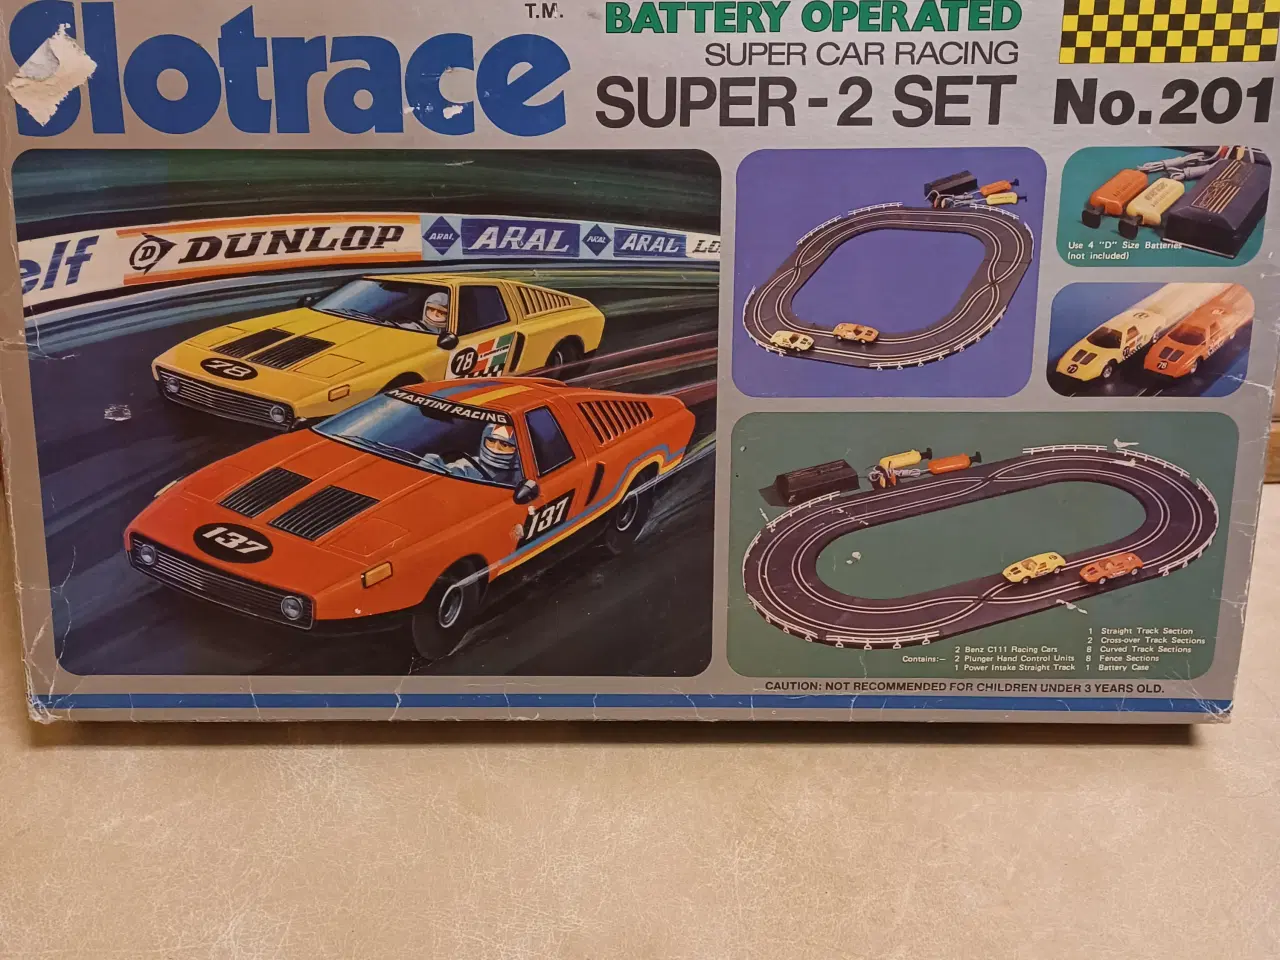 Billede 1 - Slotrace Super Car Racing - Super - 2 set